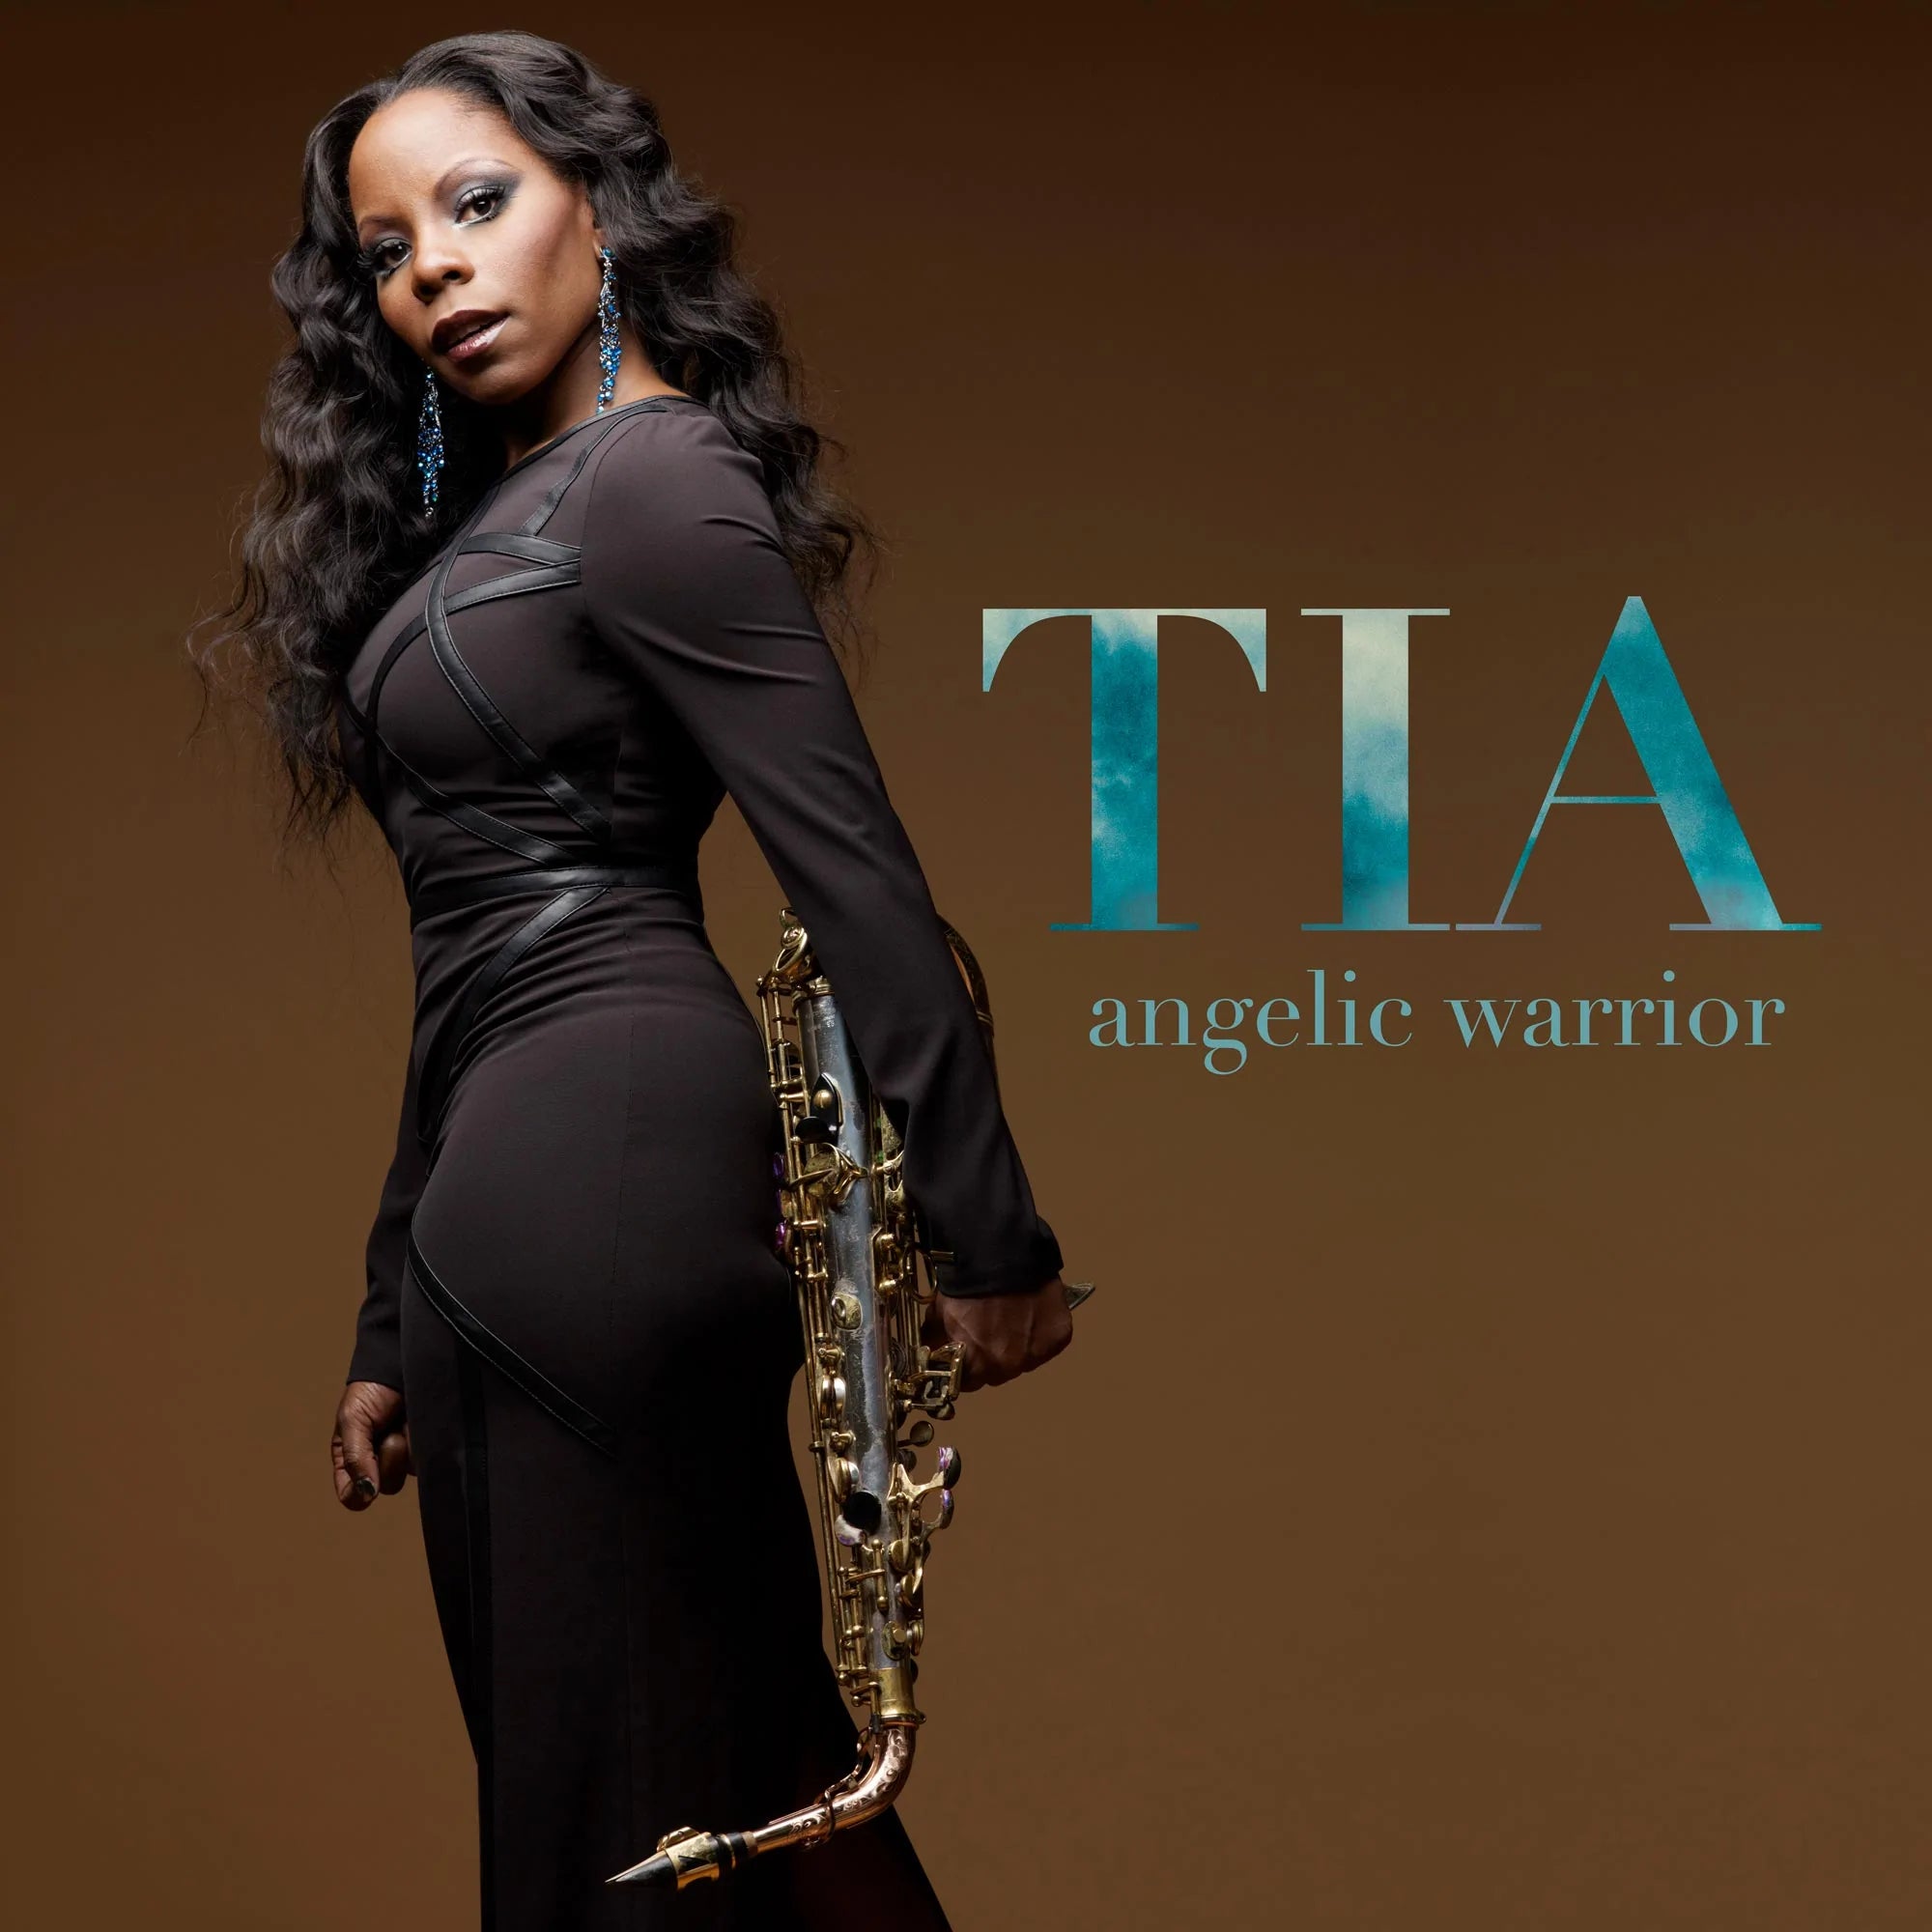 Tia Fuller - Angelic Warrior